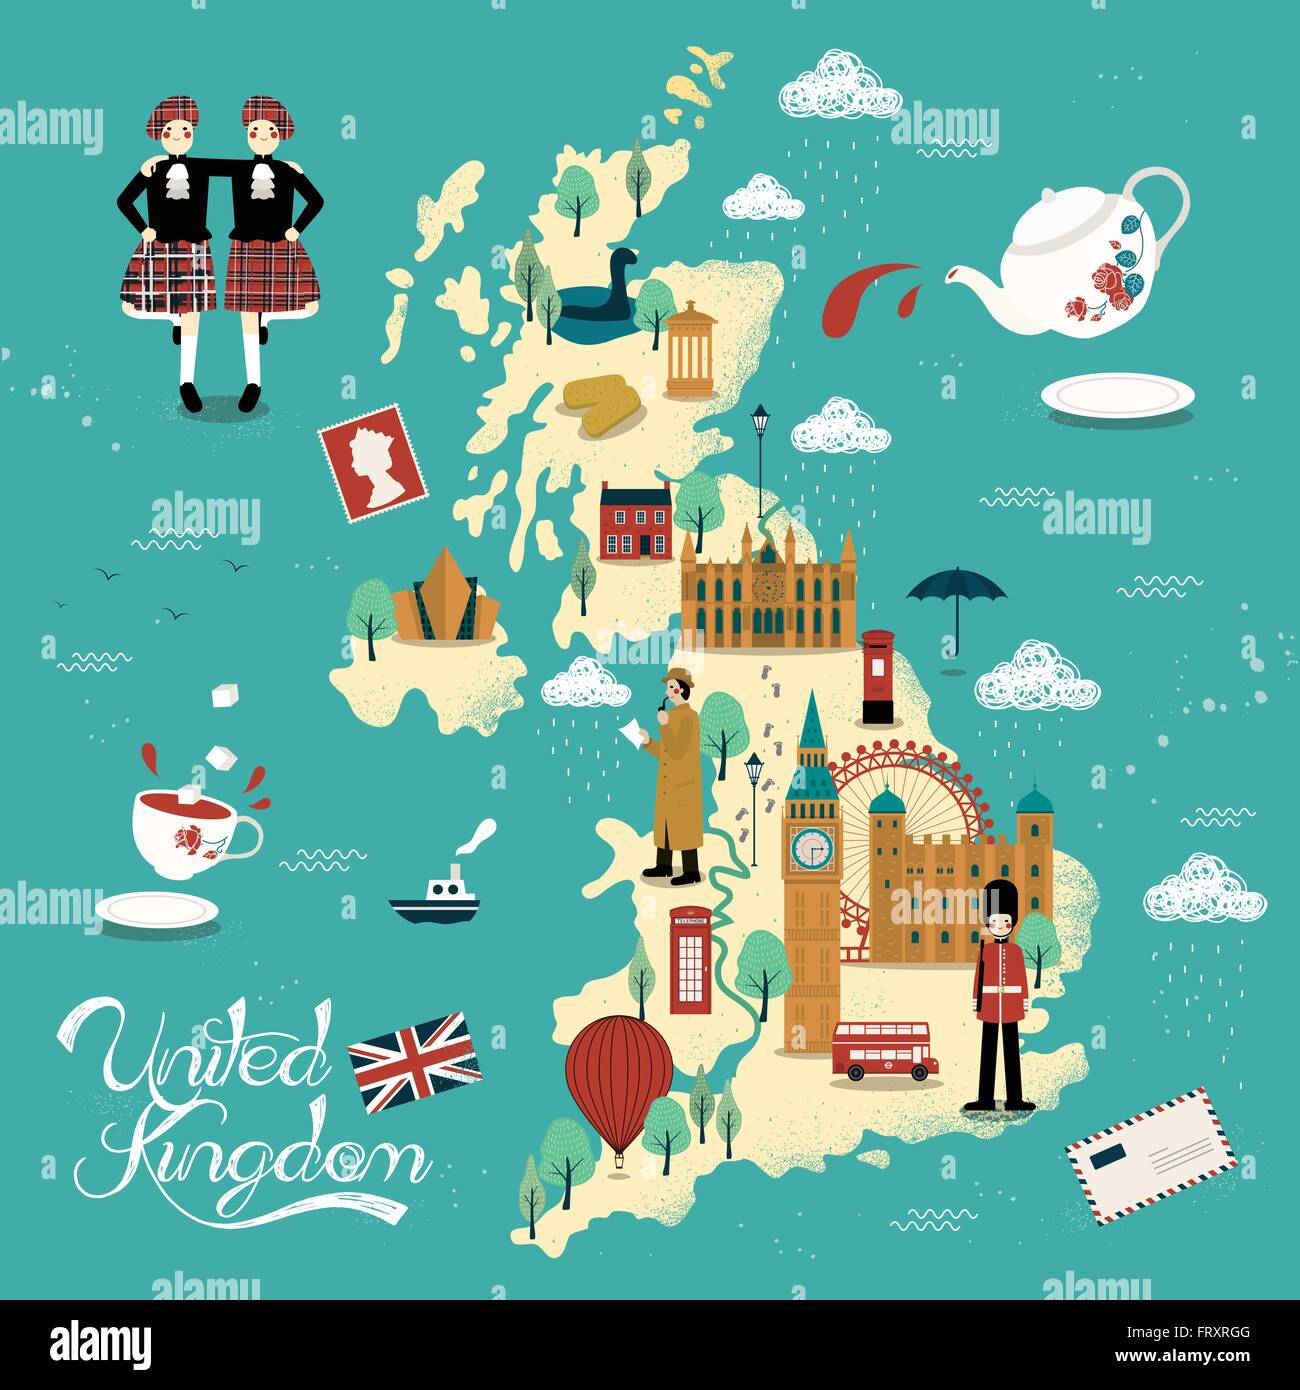 Incantevole Regno Unito mappa di viaggio design con attrazioni Illustrazione Vettoriale